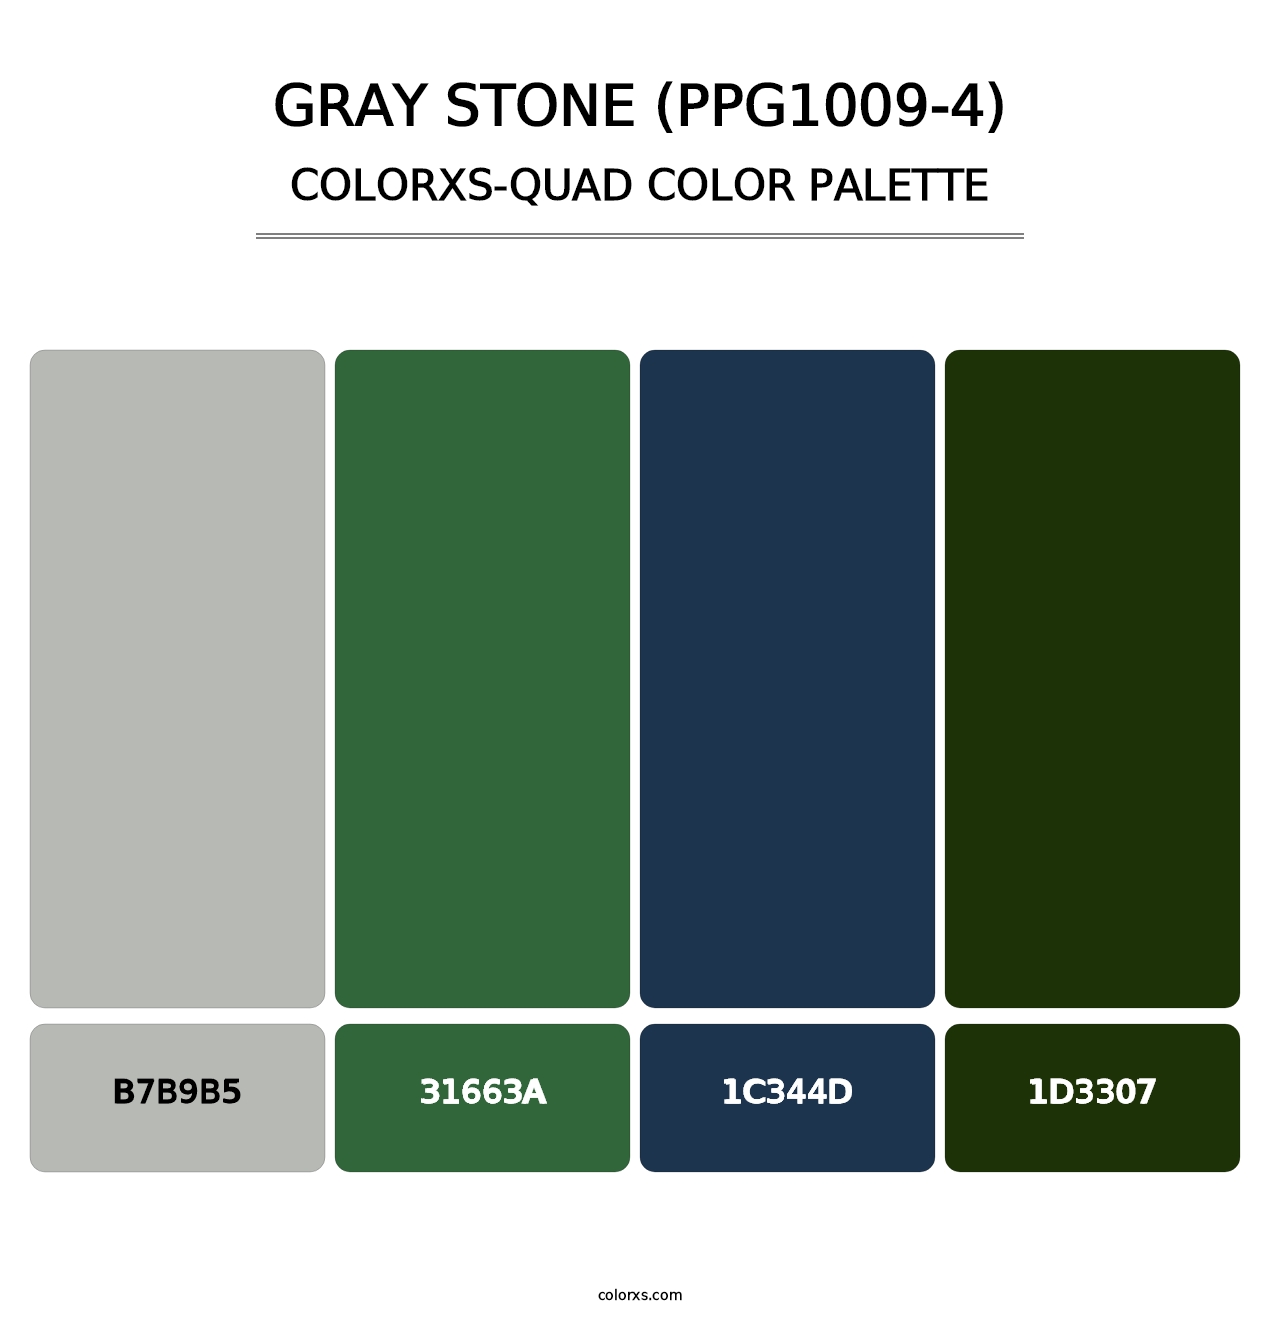 Gray Stone (PPG1009-4) - Colorxs Quad Palette